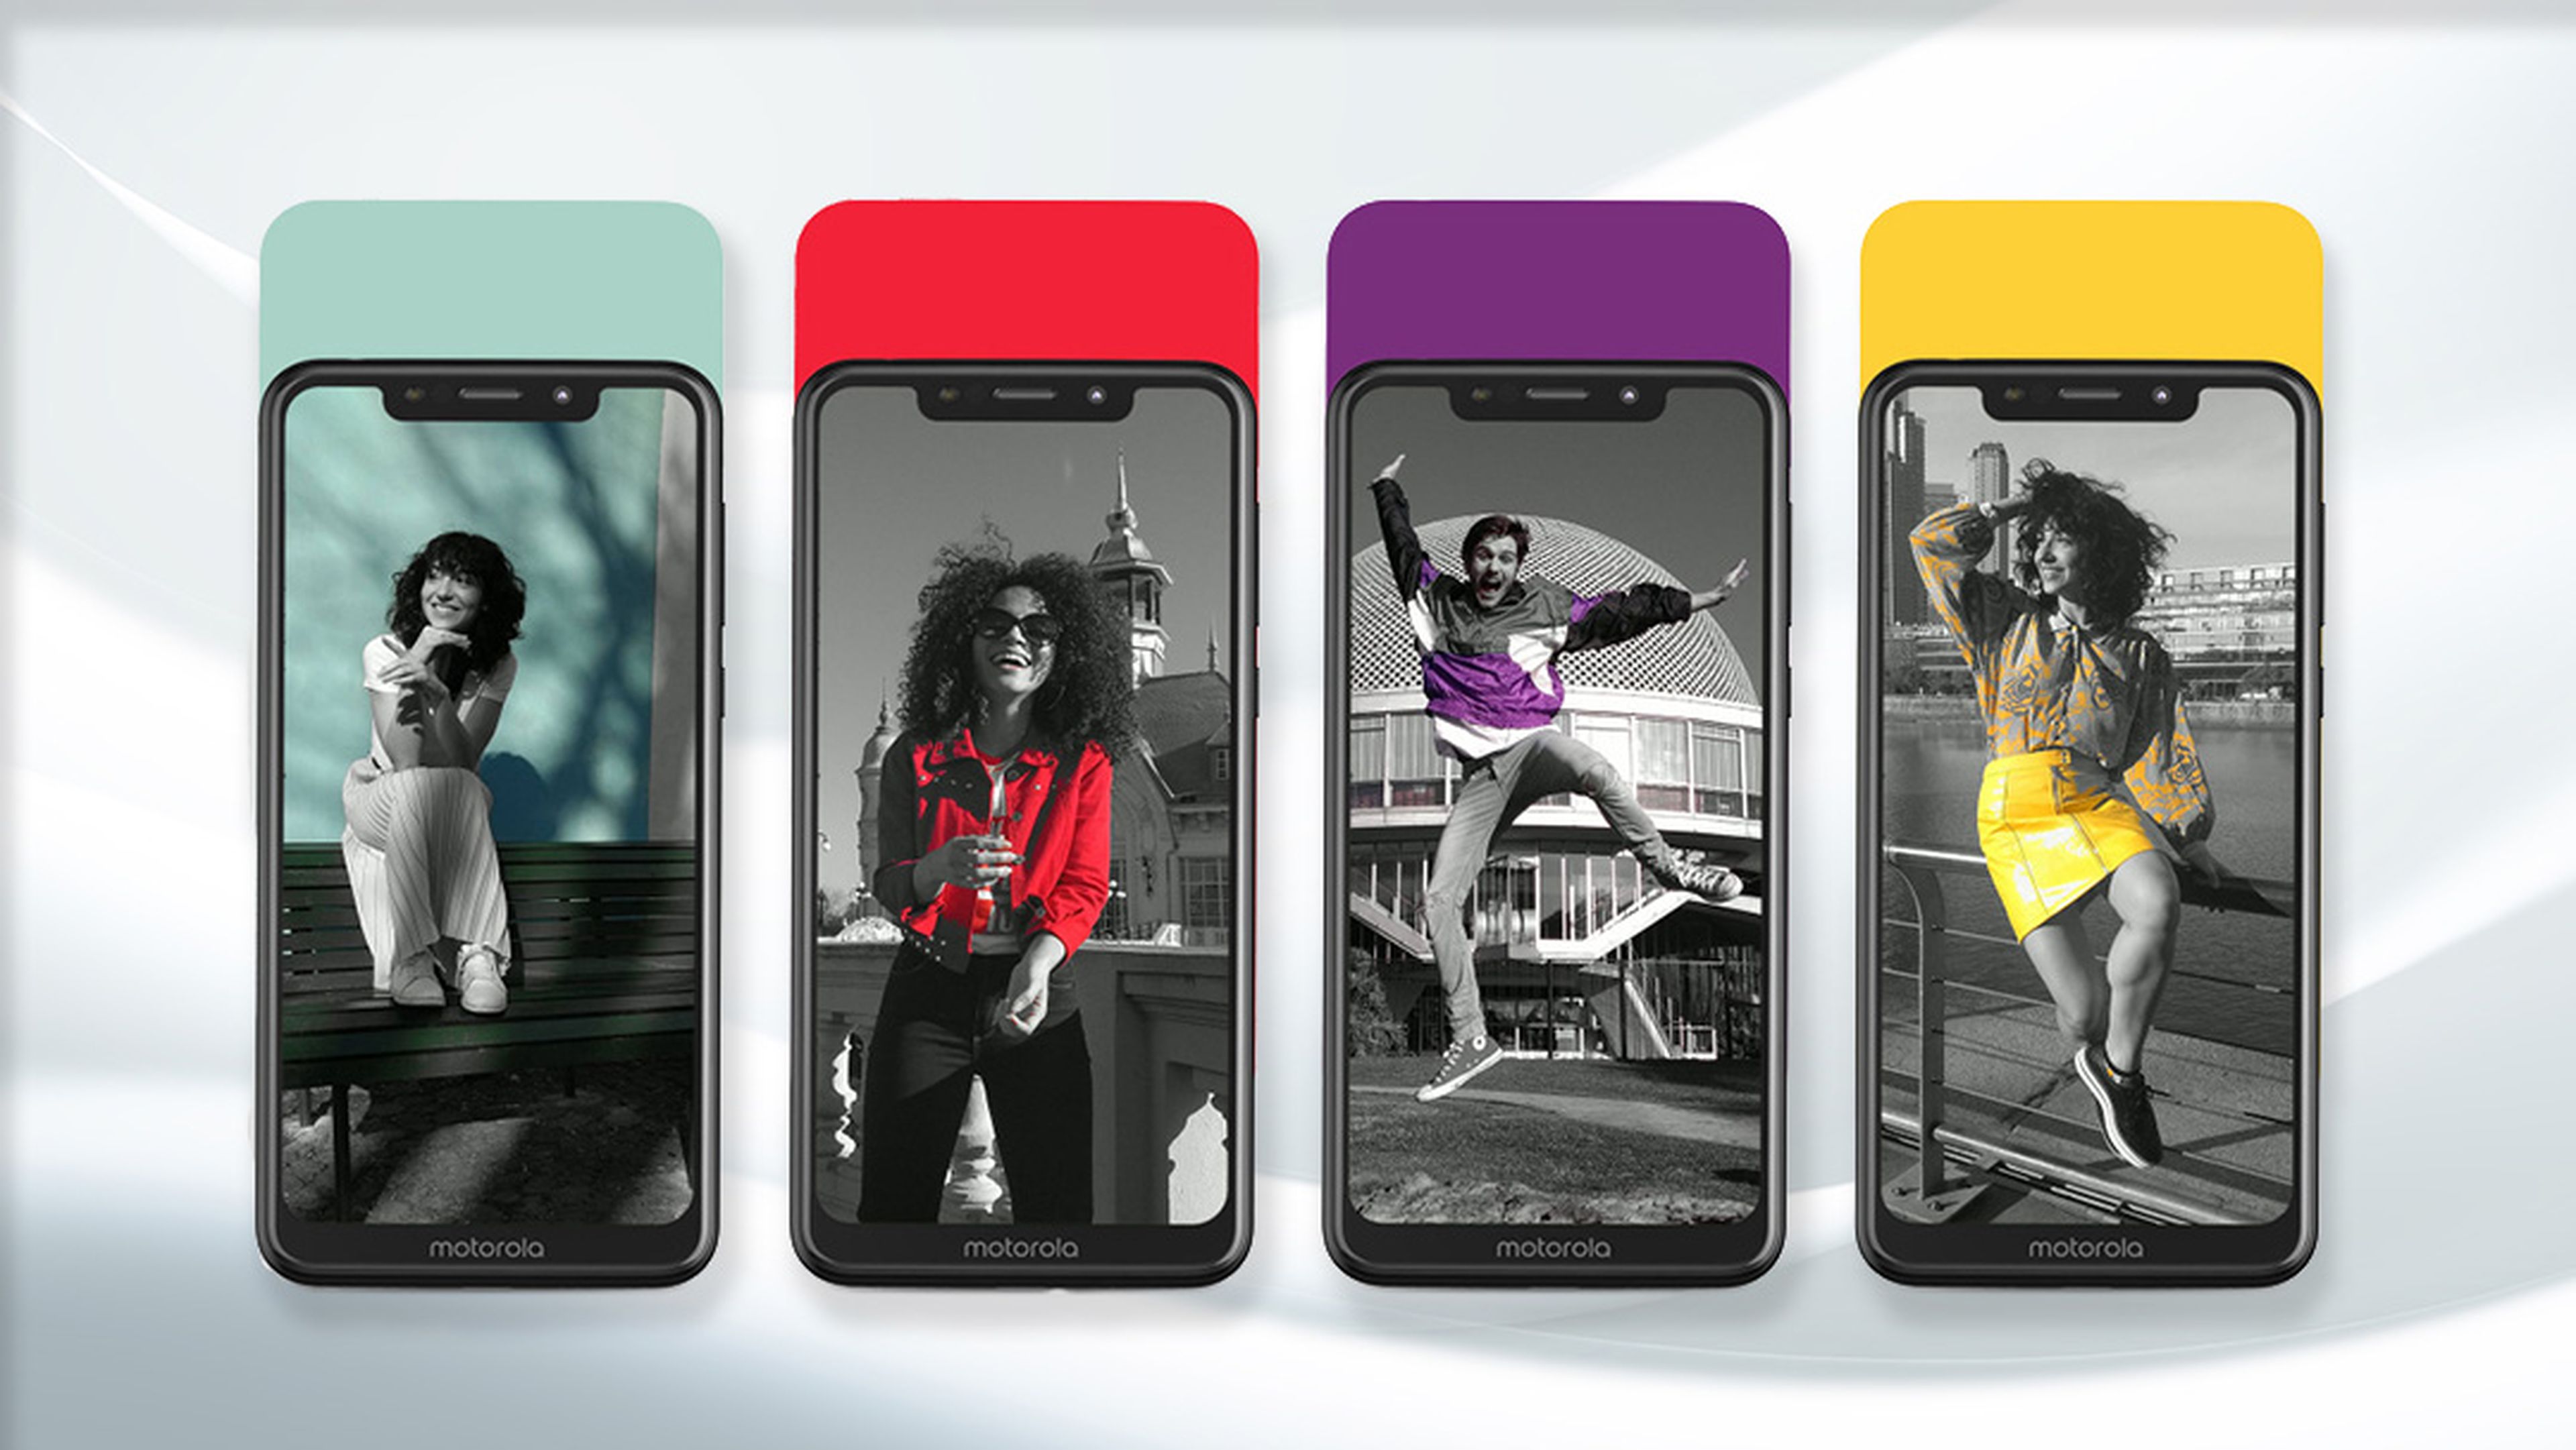 Motorola One, juega con los colores y los efectos creativos de su nueva cámara